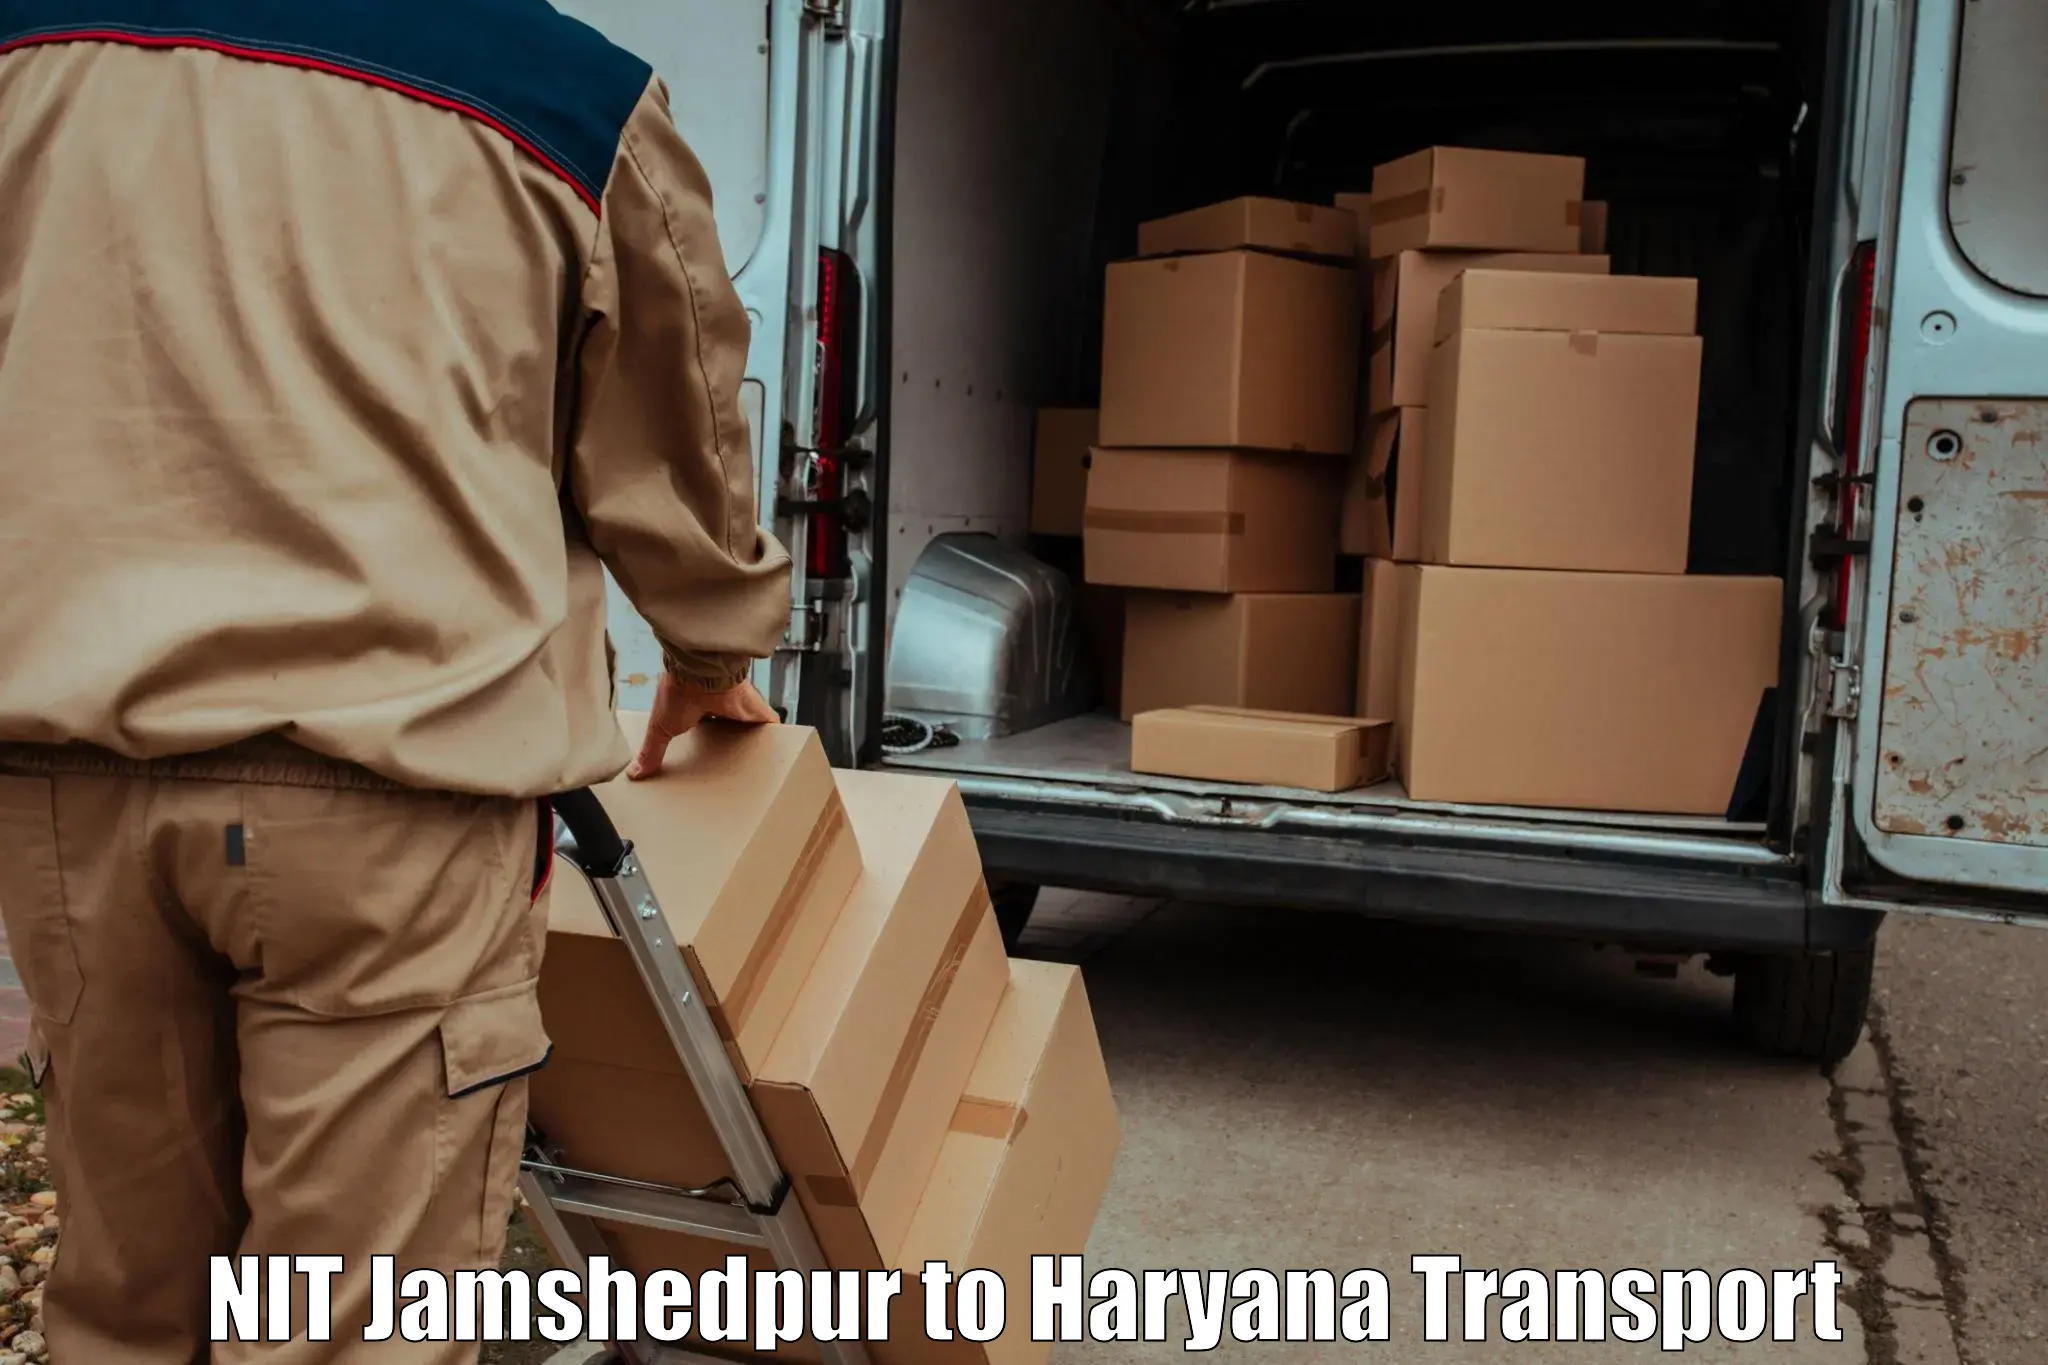 Bike shipping service NIT Jamshedpur to Chirya